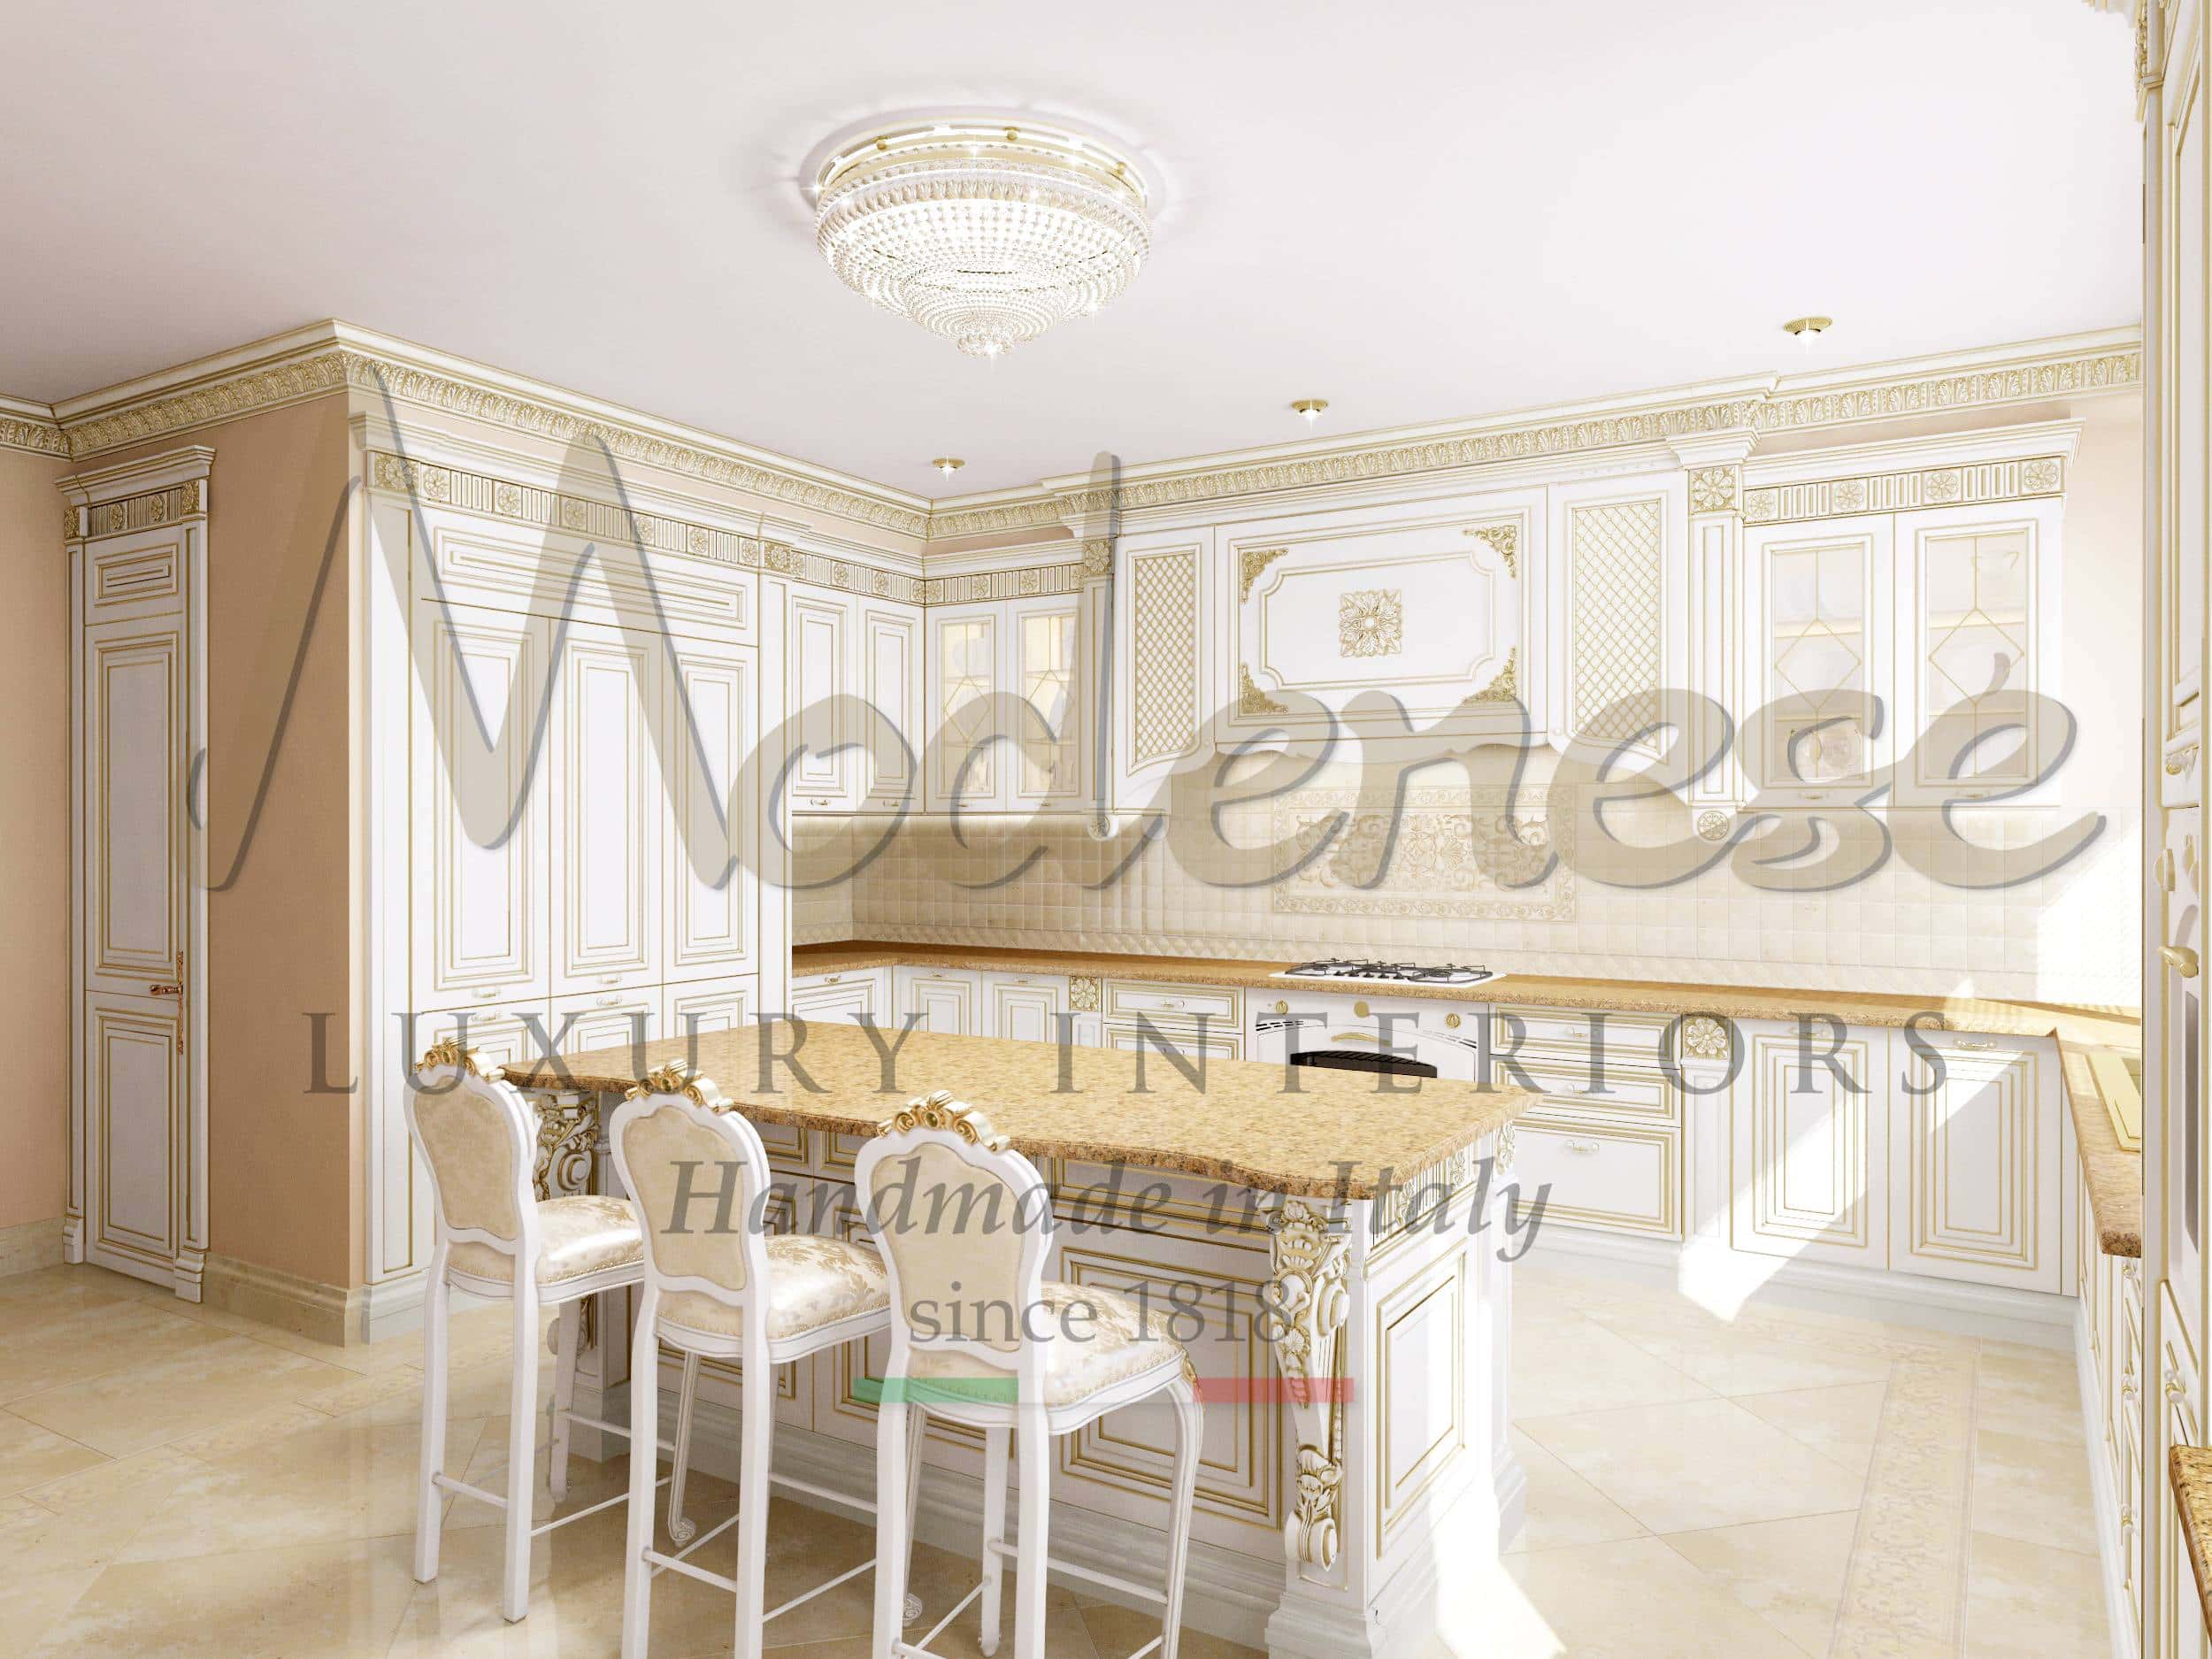 классические итальянские ванные комнаты делюкс стиль французике ванные мраморные на заказ итальянское качество дизайн проект для эксклюзивного интерьера